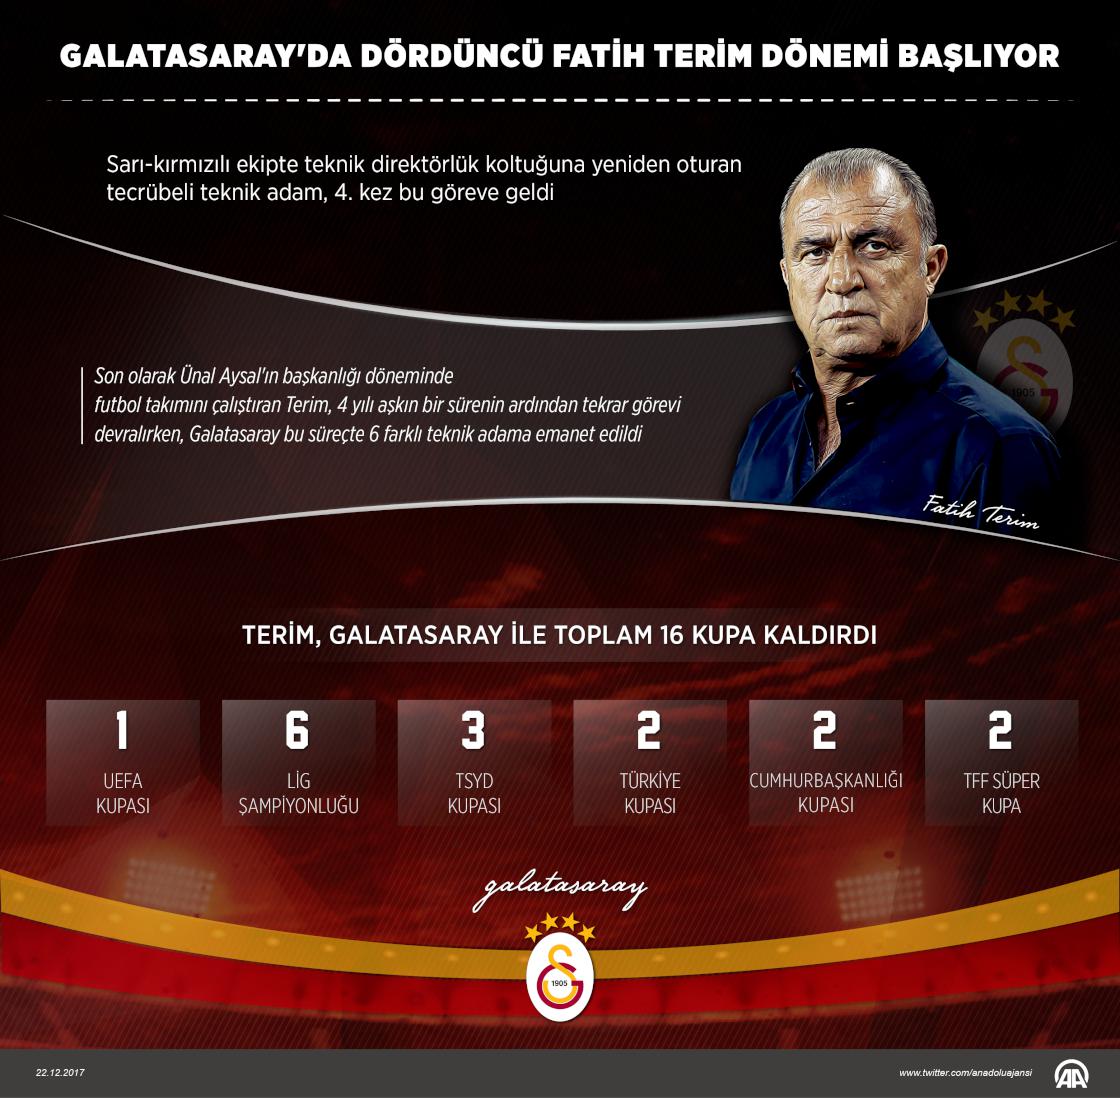 Galatasaray'da dördüncü Fatih Terim dönemi başlıyor